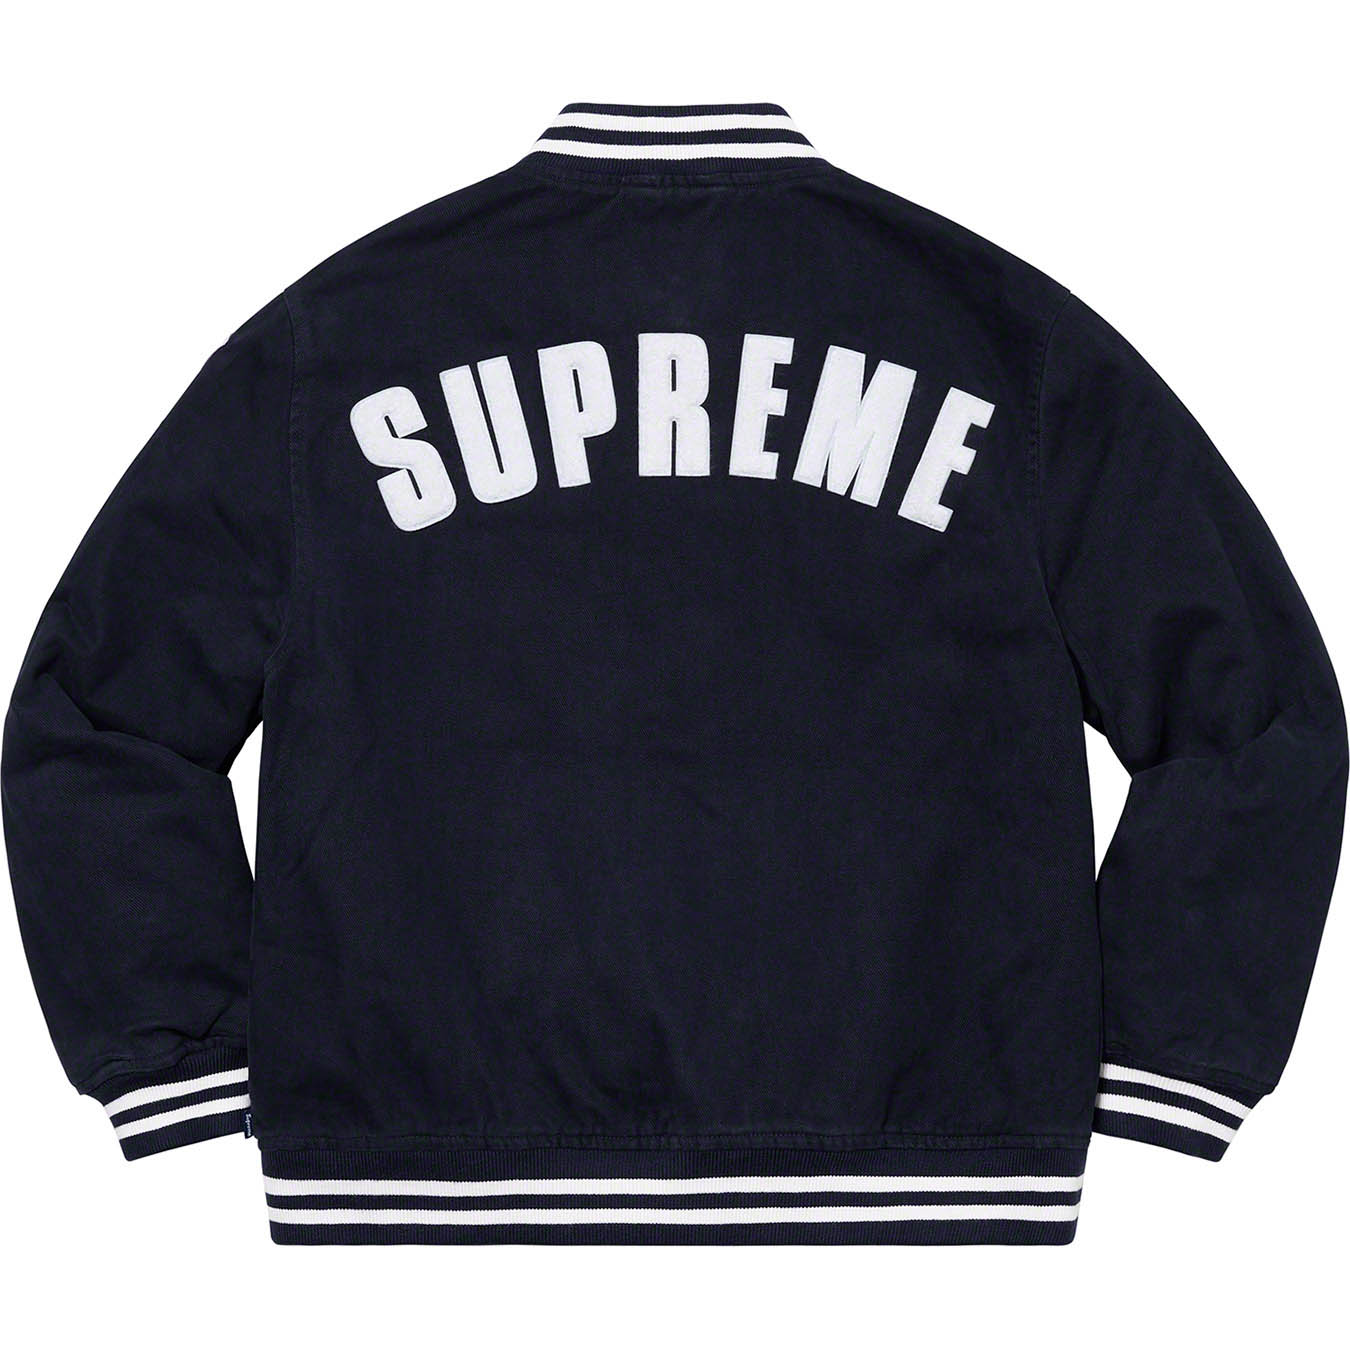 Supreme®/New Era®/MLB Varsity Jacket | Supreme 20ss